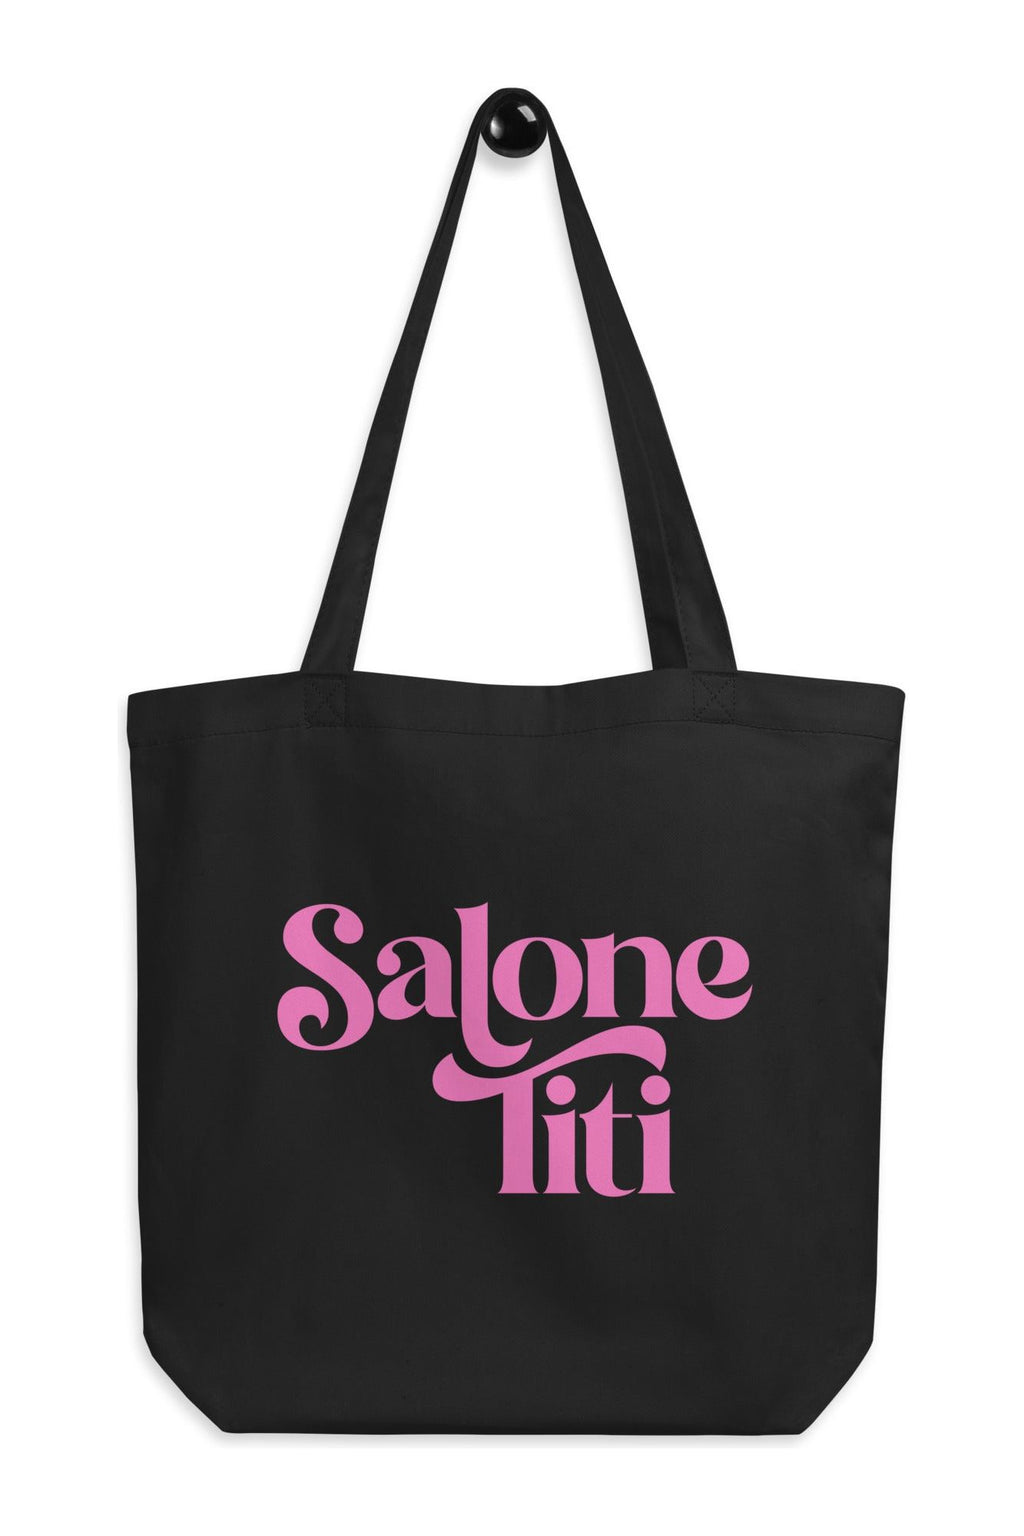 Salone Titi Tote Bag- Pink - Mission LaneTote